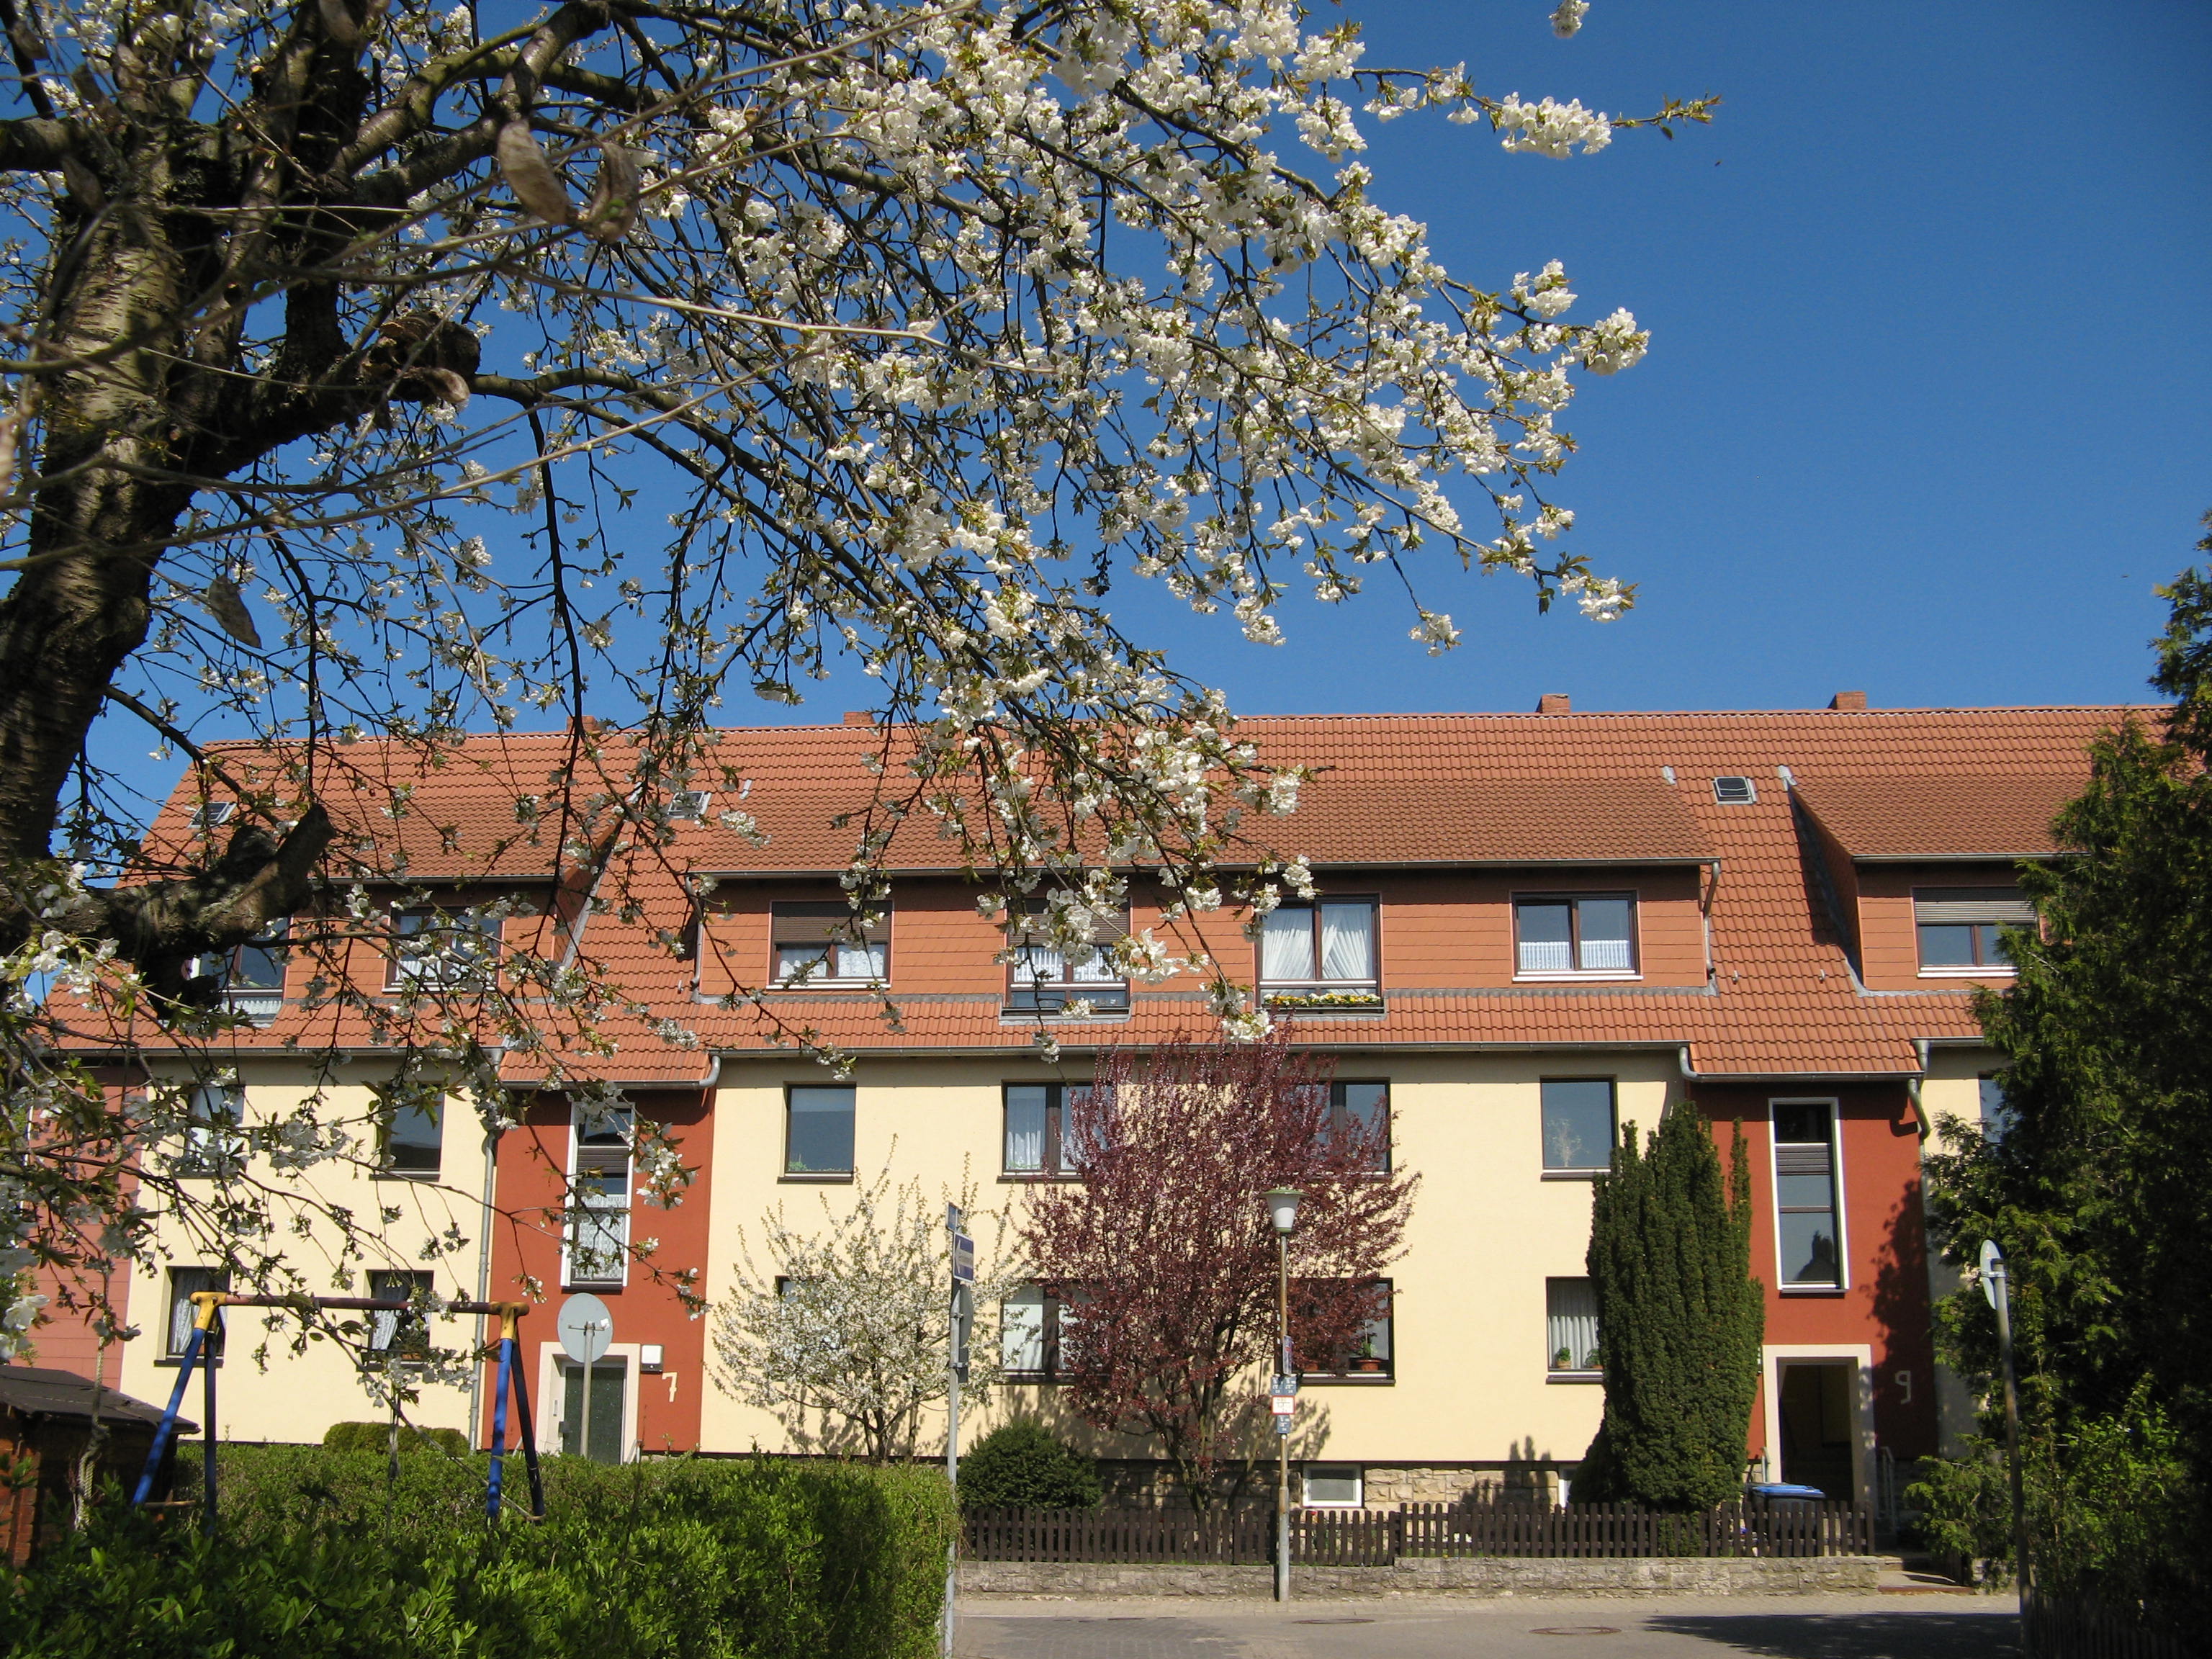 Mietwohnungen der Wohnstatt Wolfenbüttel Baugesellschaft mbH im Elmweg, Wolfenbüttel